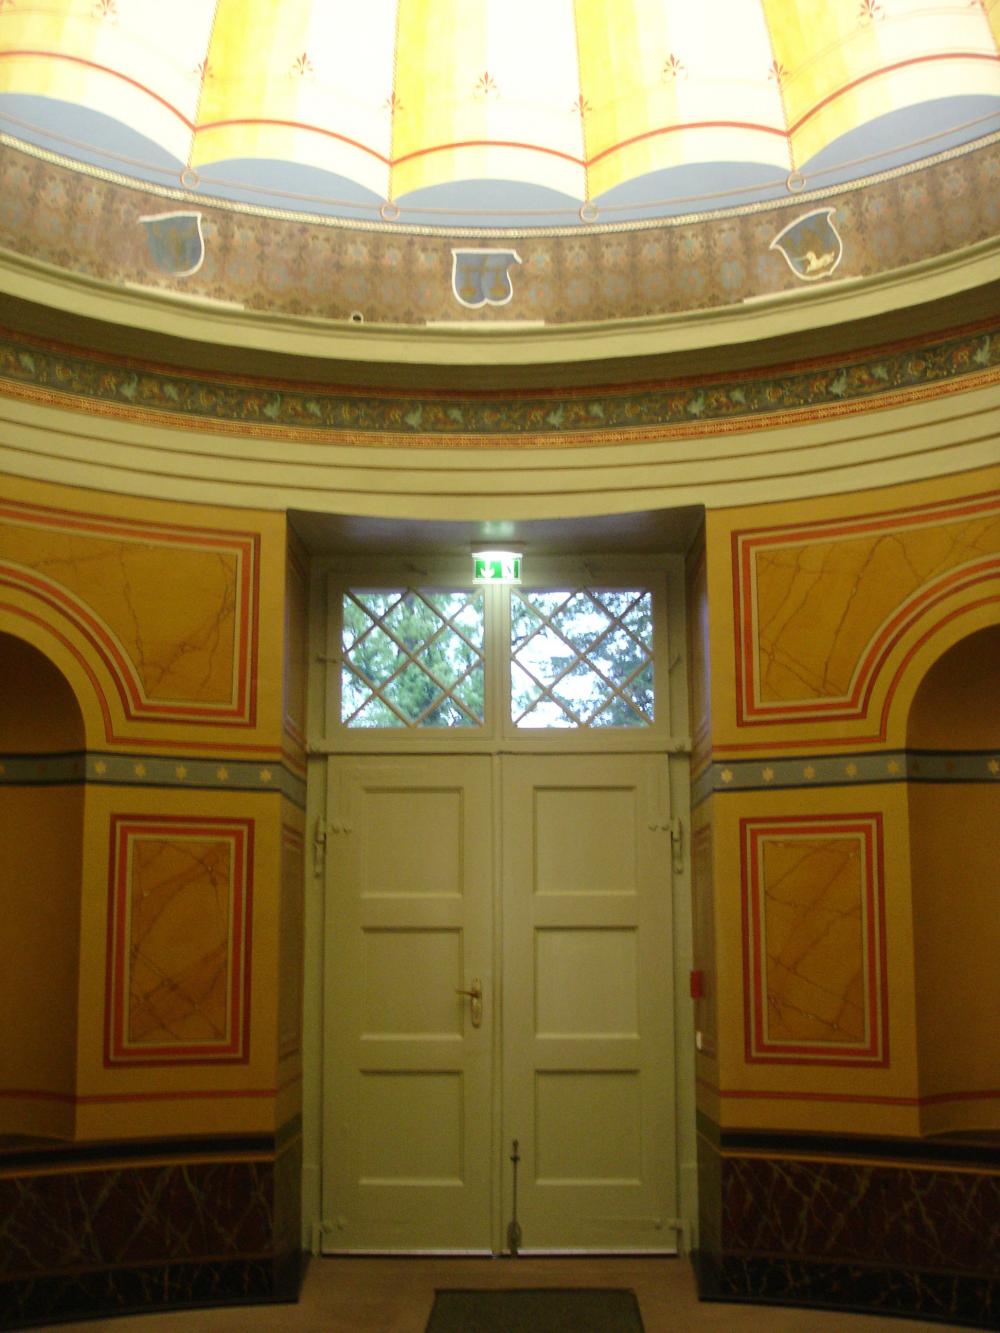 Göttingen Observatory, entrance hall with vault u